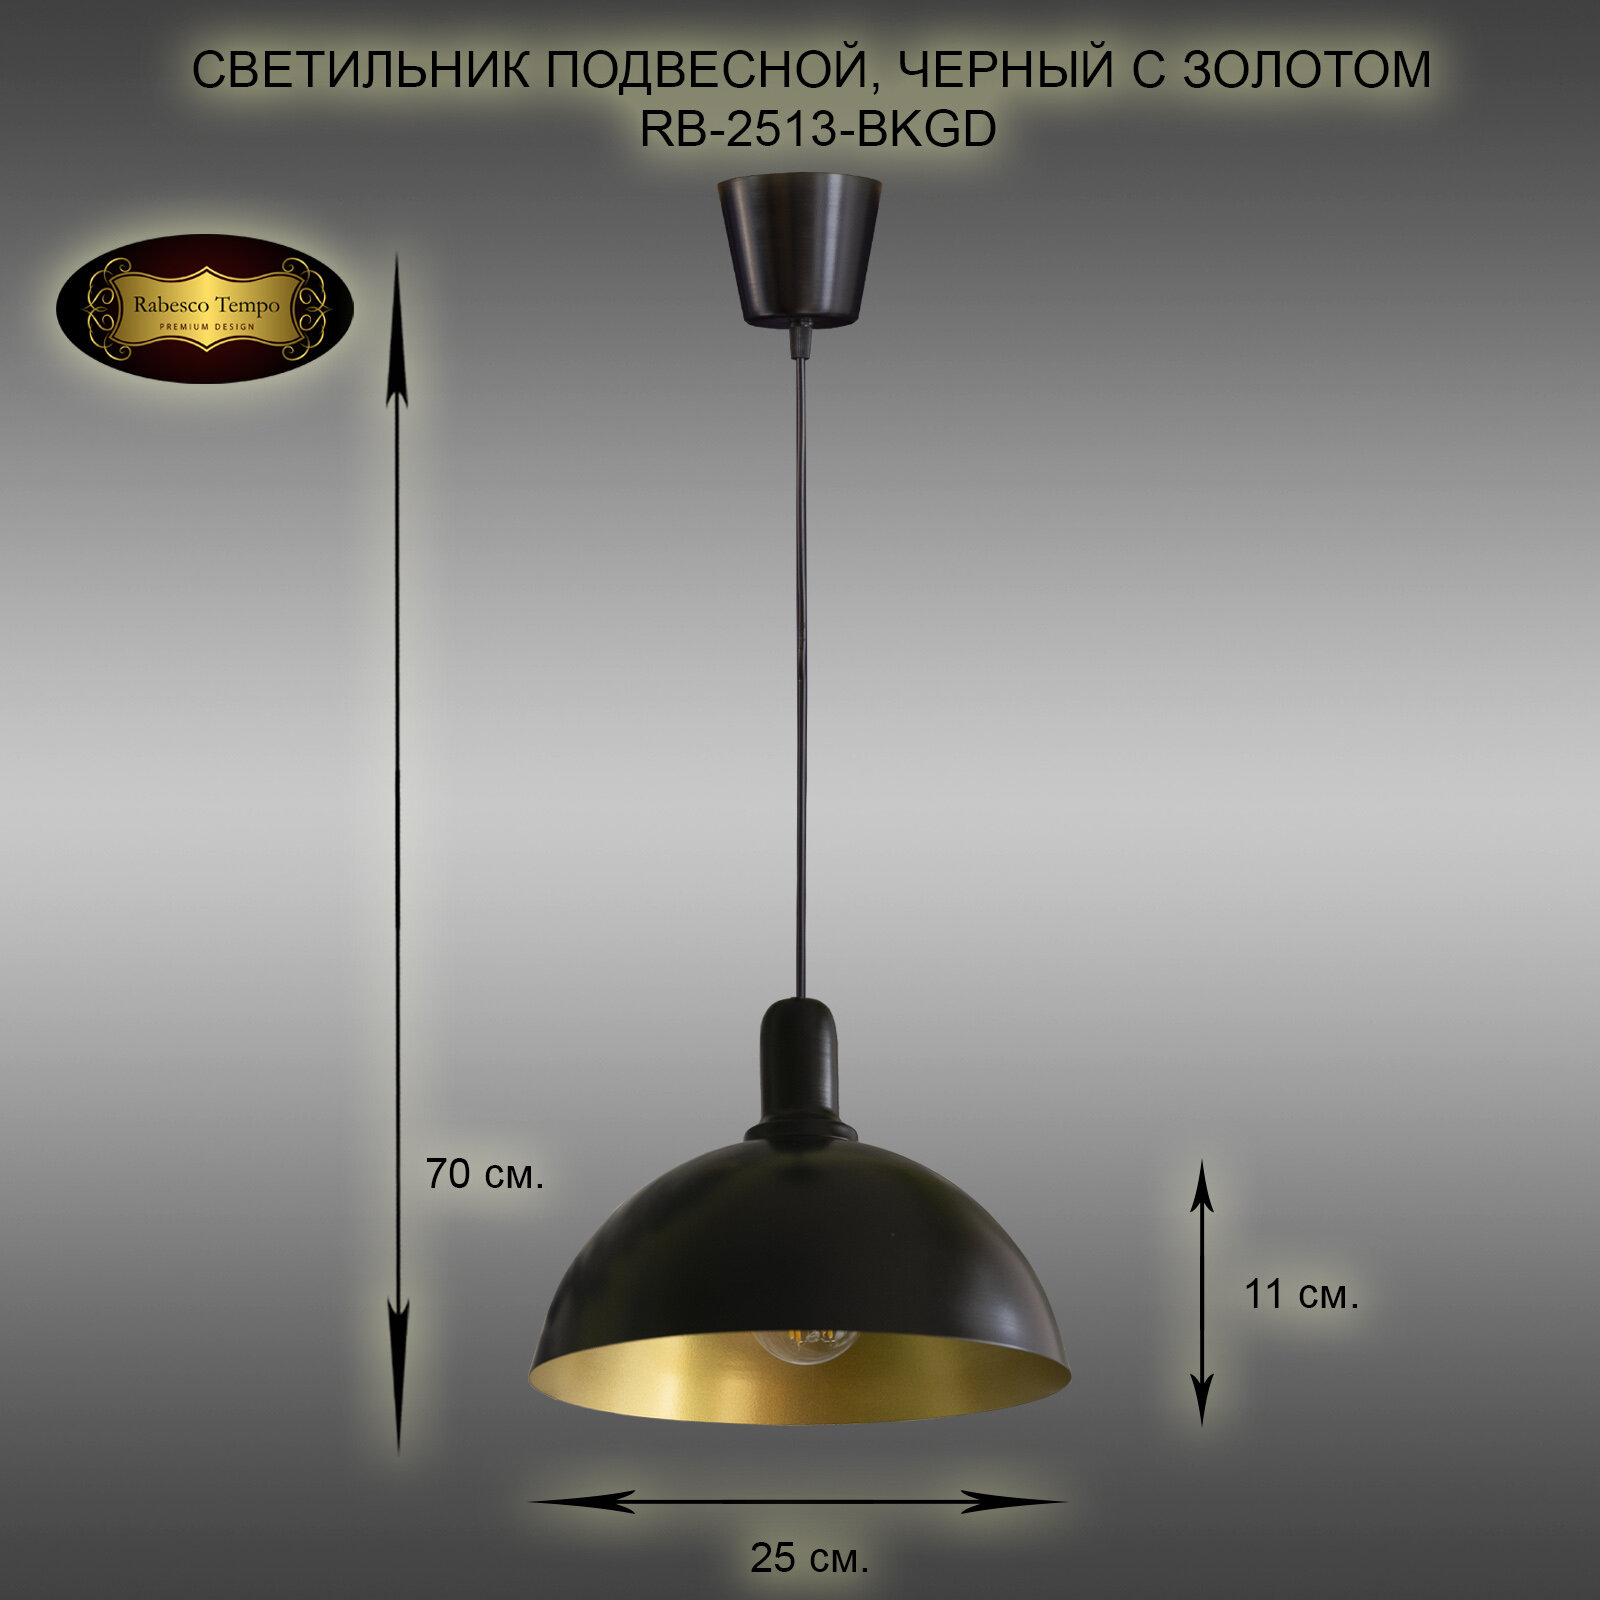 Подвесной светильник, люстра подвесная Rabesco. Арт. RB-2513/1-BKGD, E27, 40 Вт. Цвет черный с золотом.